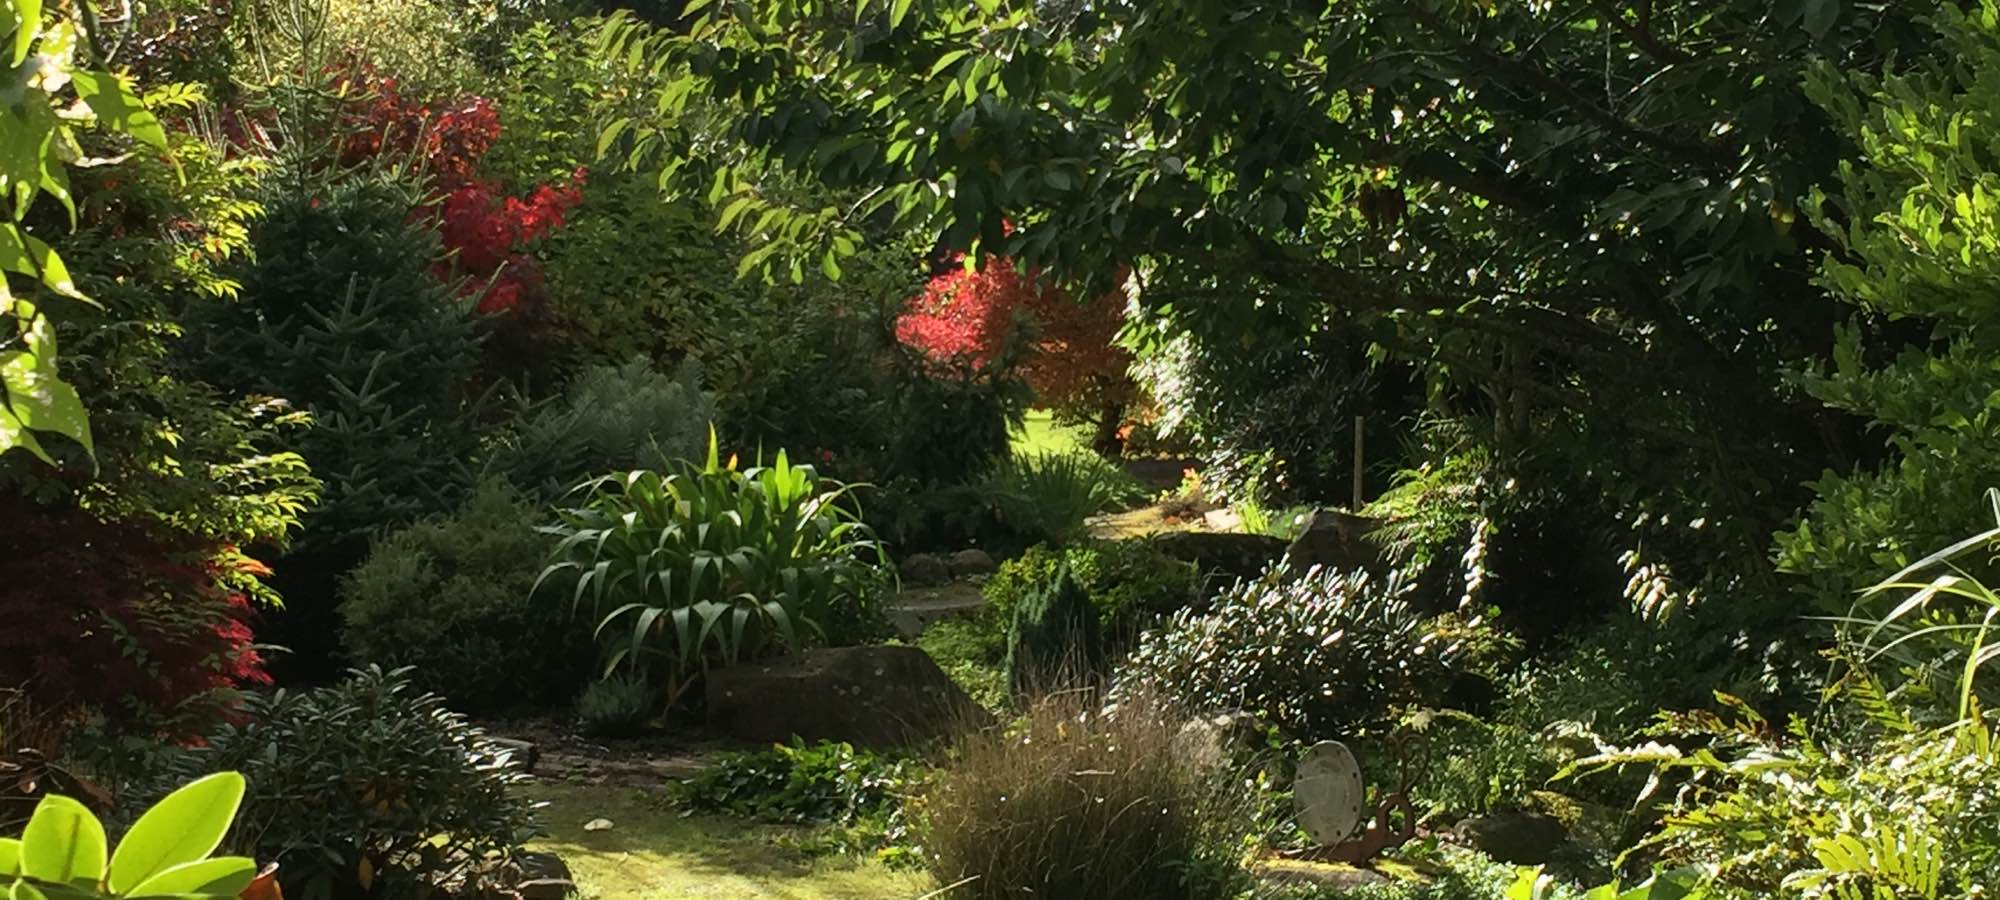 scene in garden